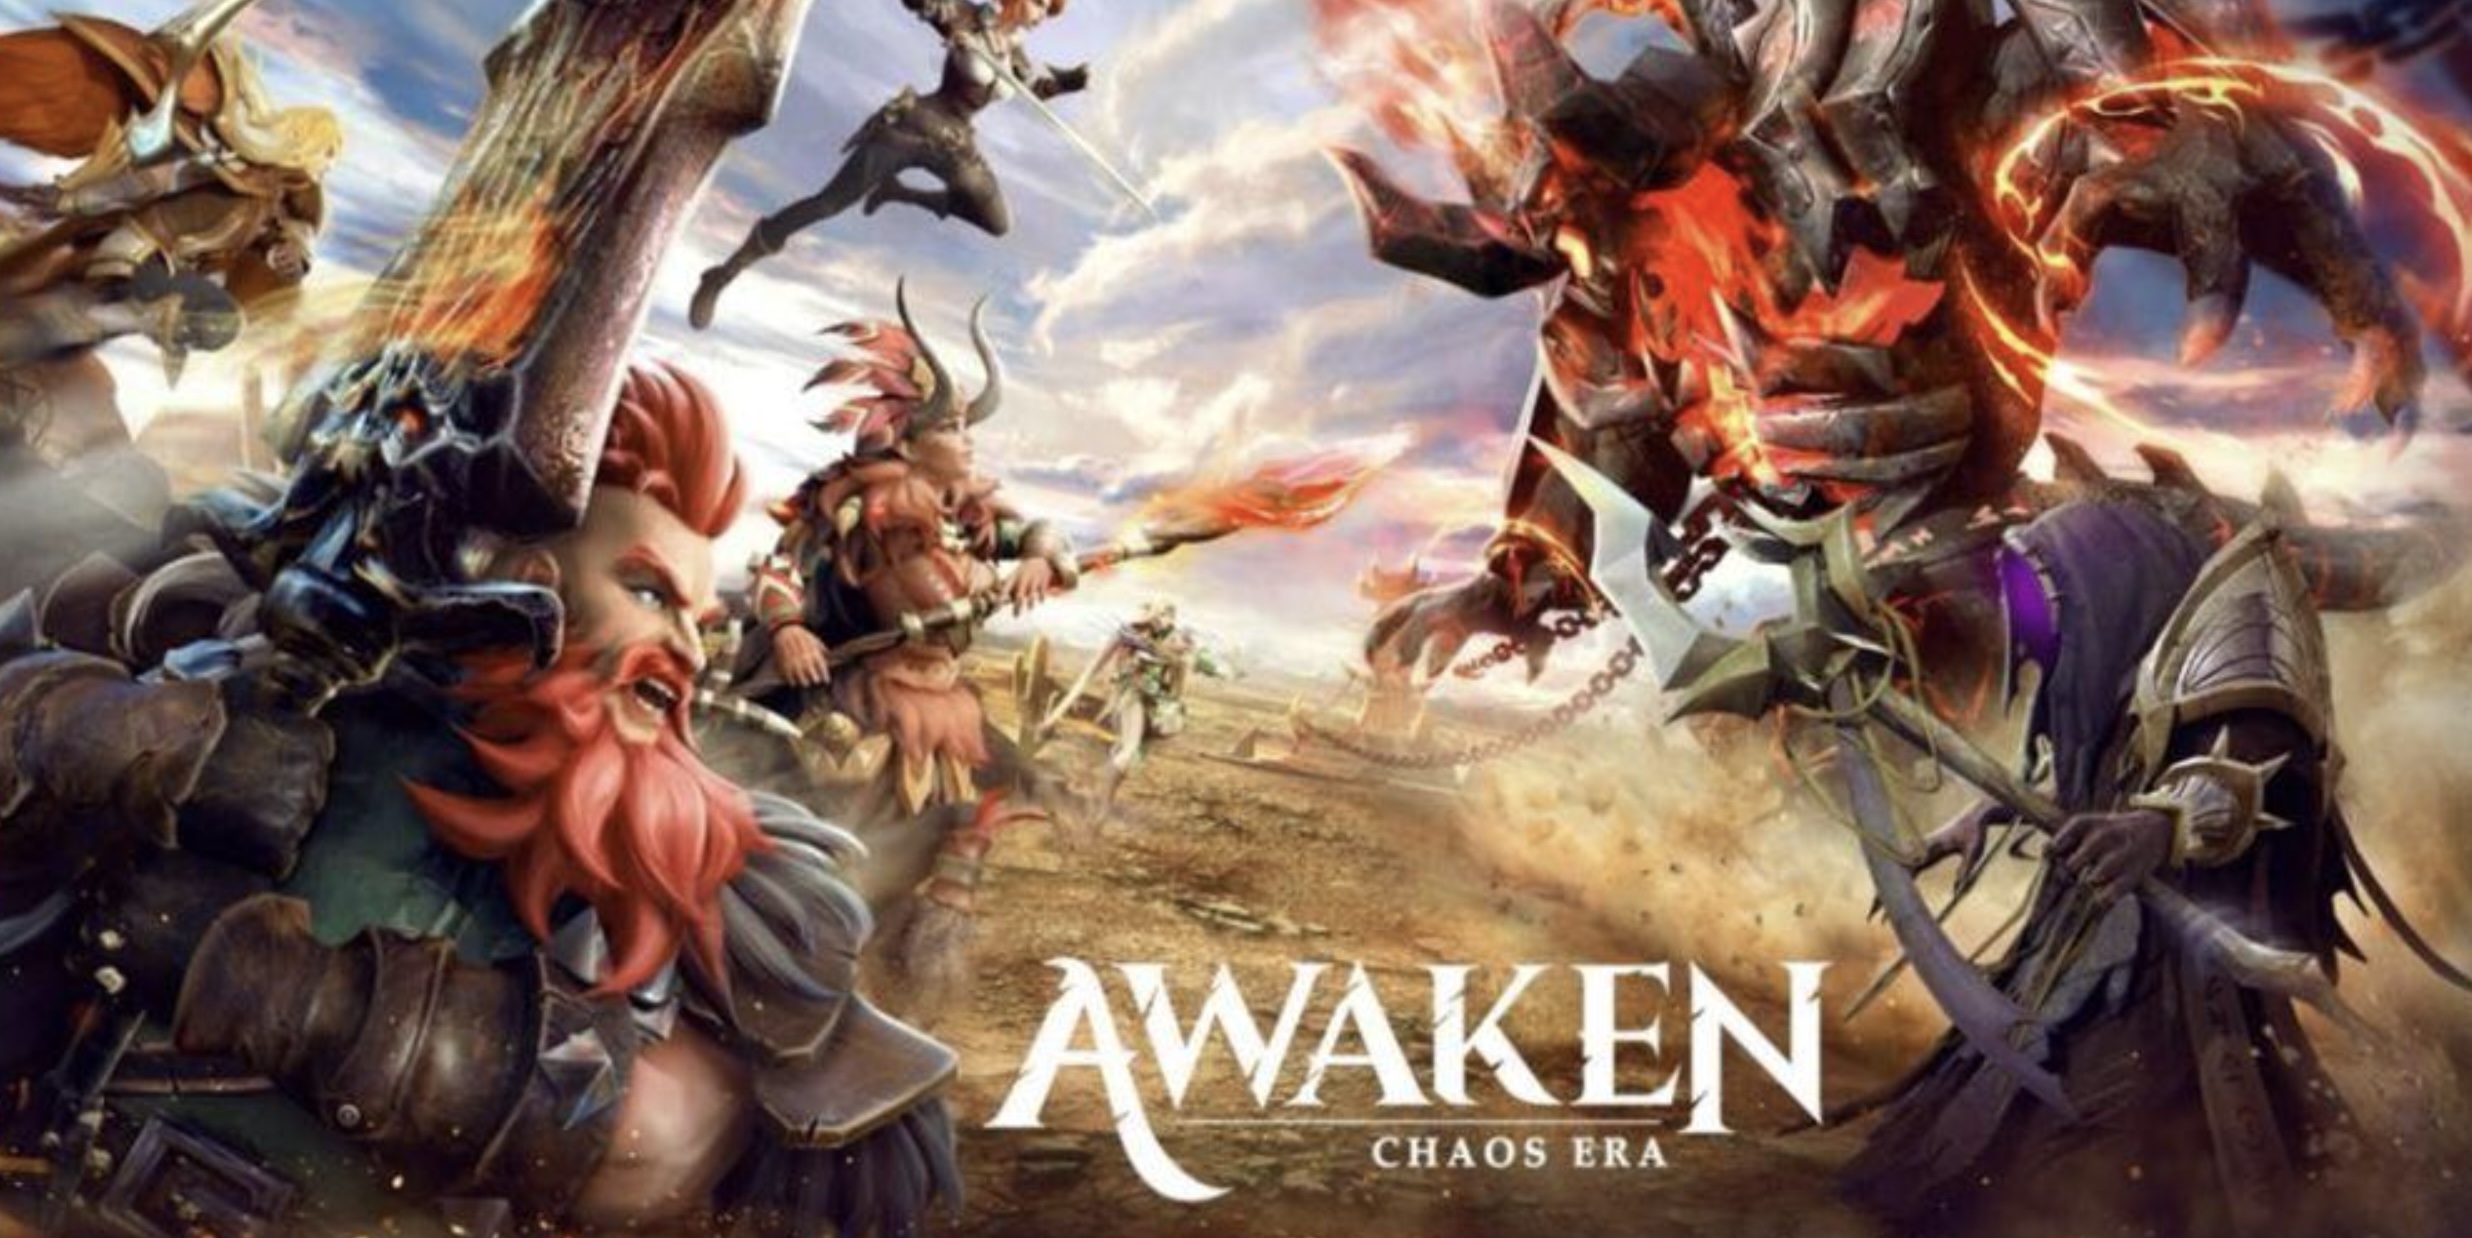 Awaken Chaos Era Promo Codes February 2022